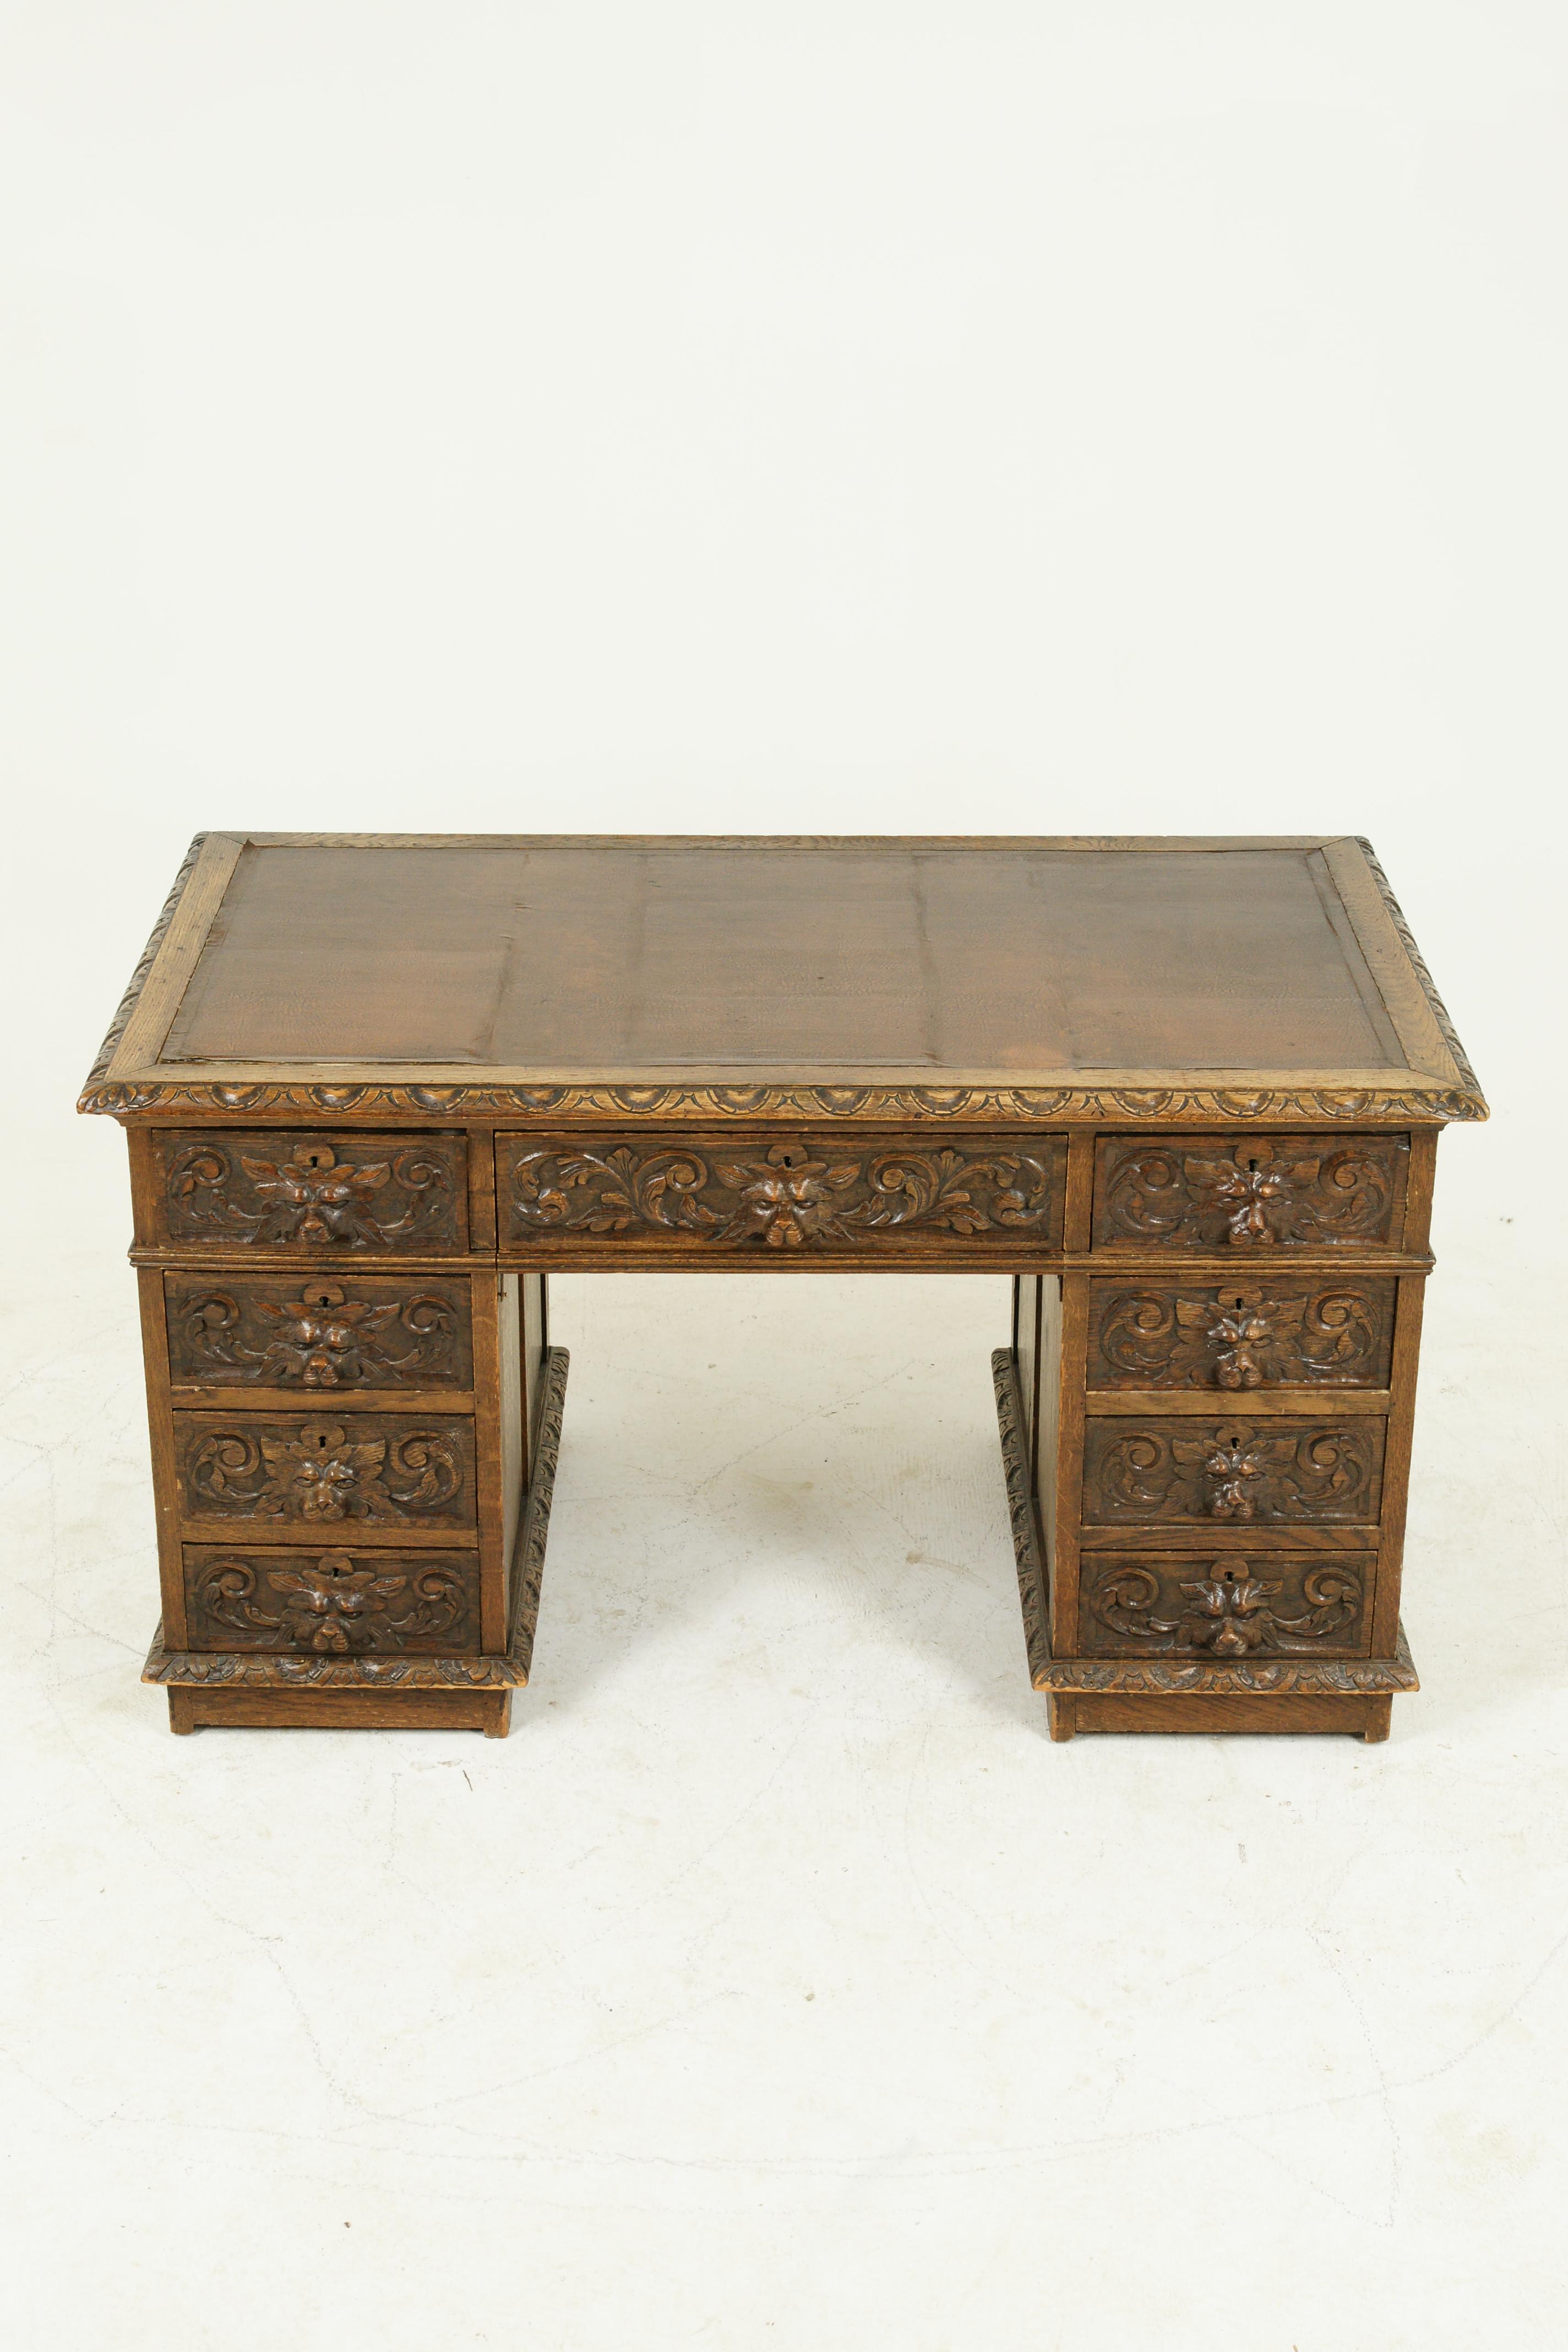 Antique carved desk, double pedestal desk, 